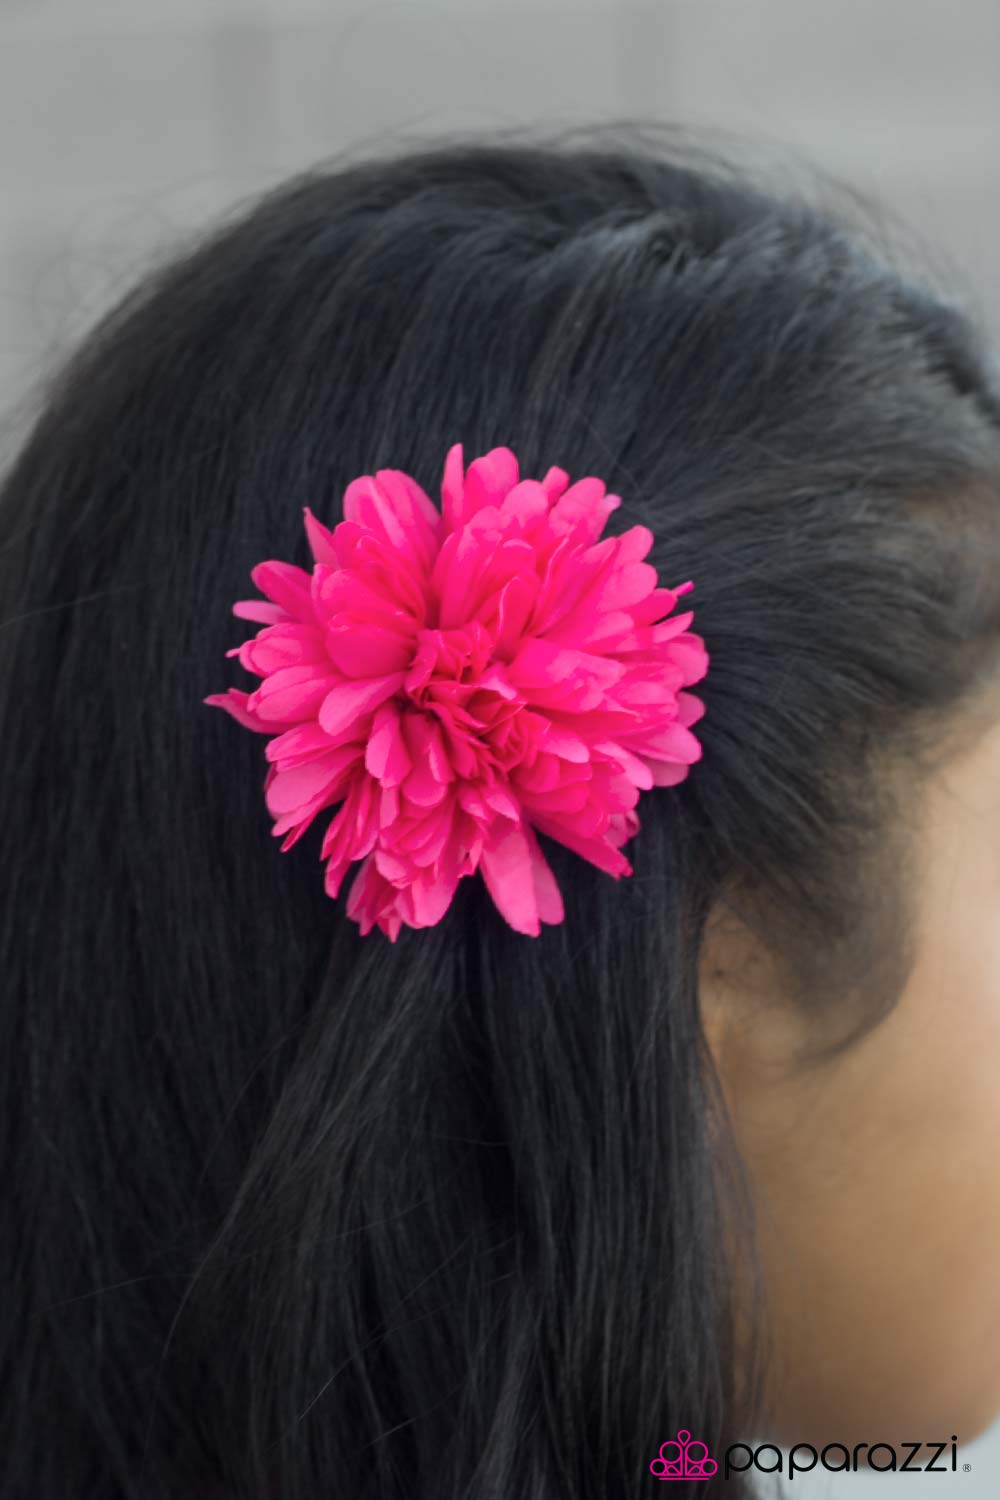 Petals-A-Plenty - Pink - Paparazzi hair clip